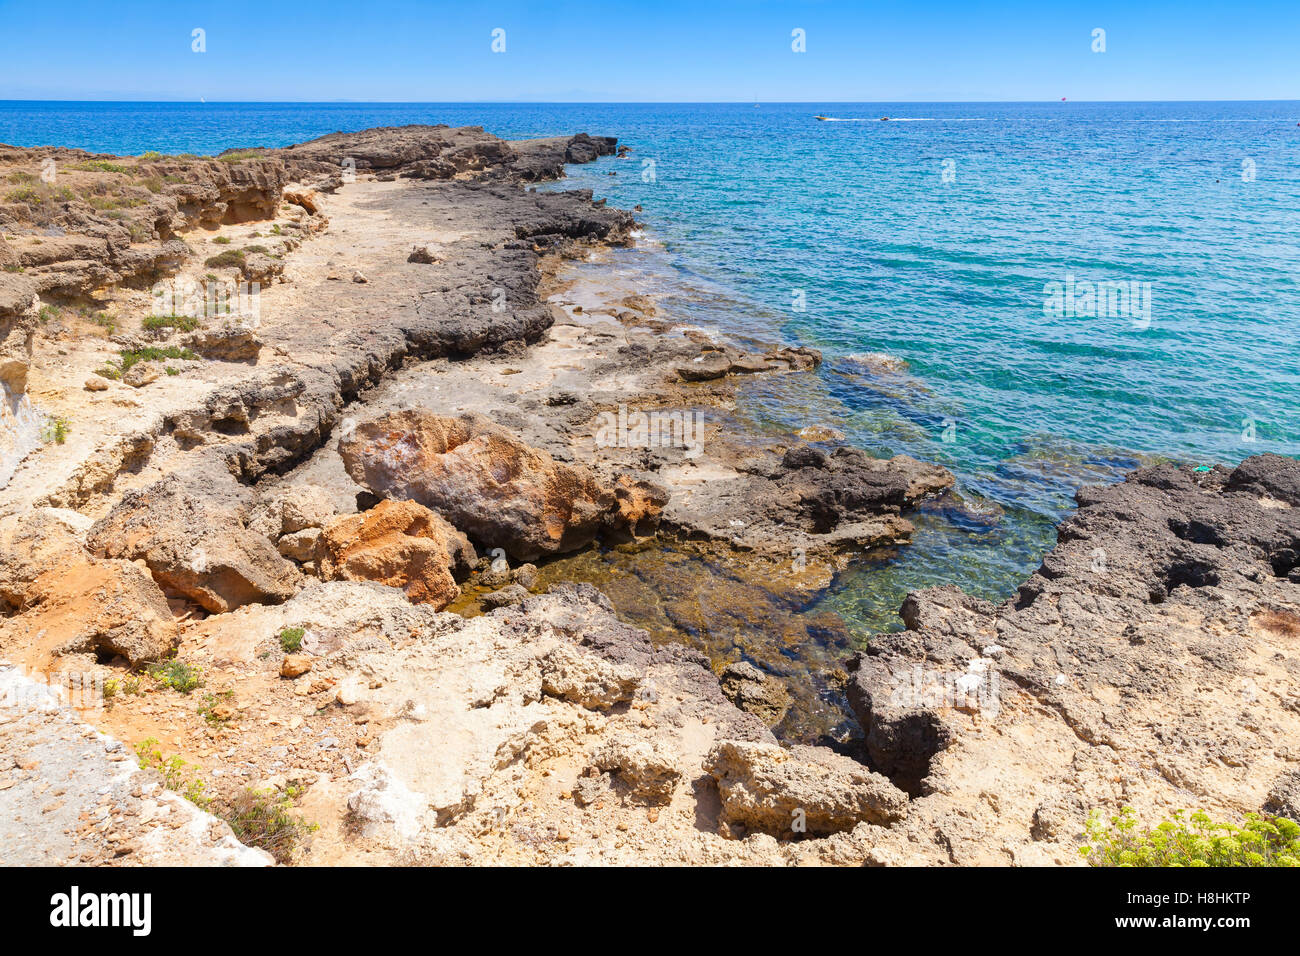 Côte rocheuse de l'île de Zakynthos, Grèce. Destination touristique populaire pour les vacances d'été Banque D'Images